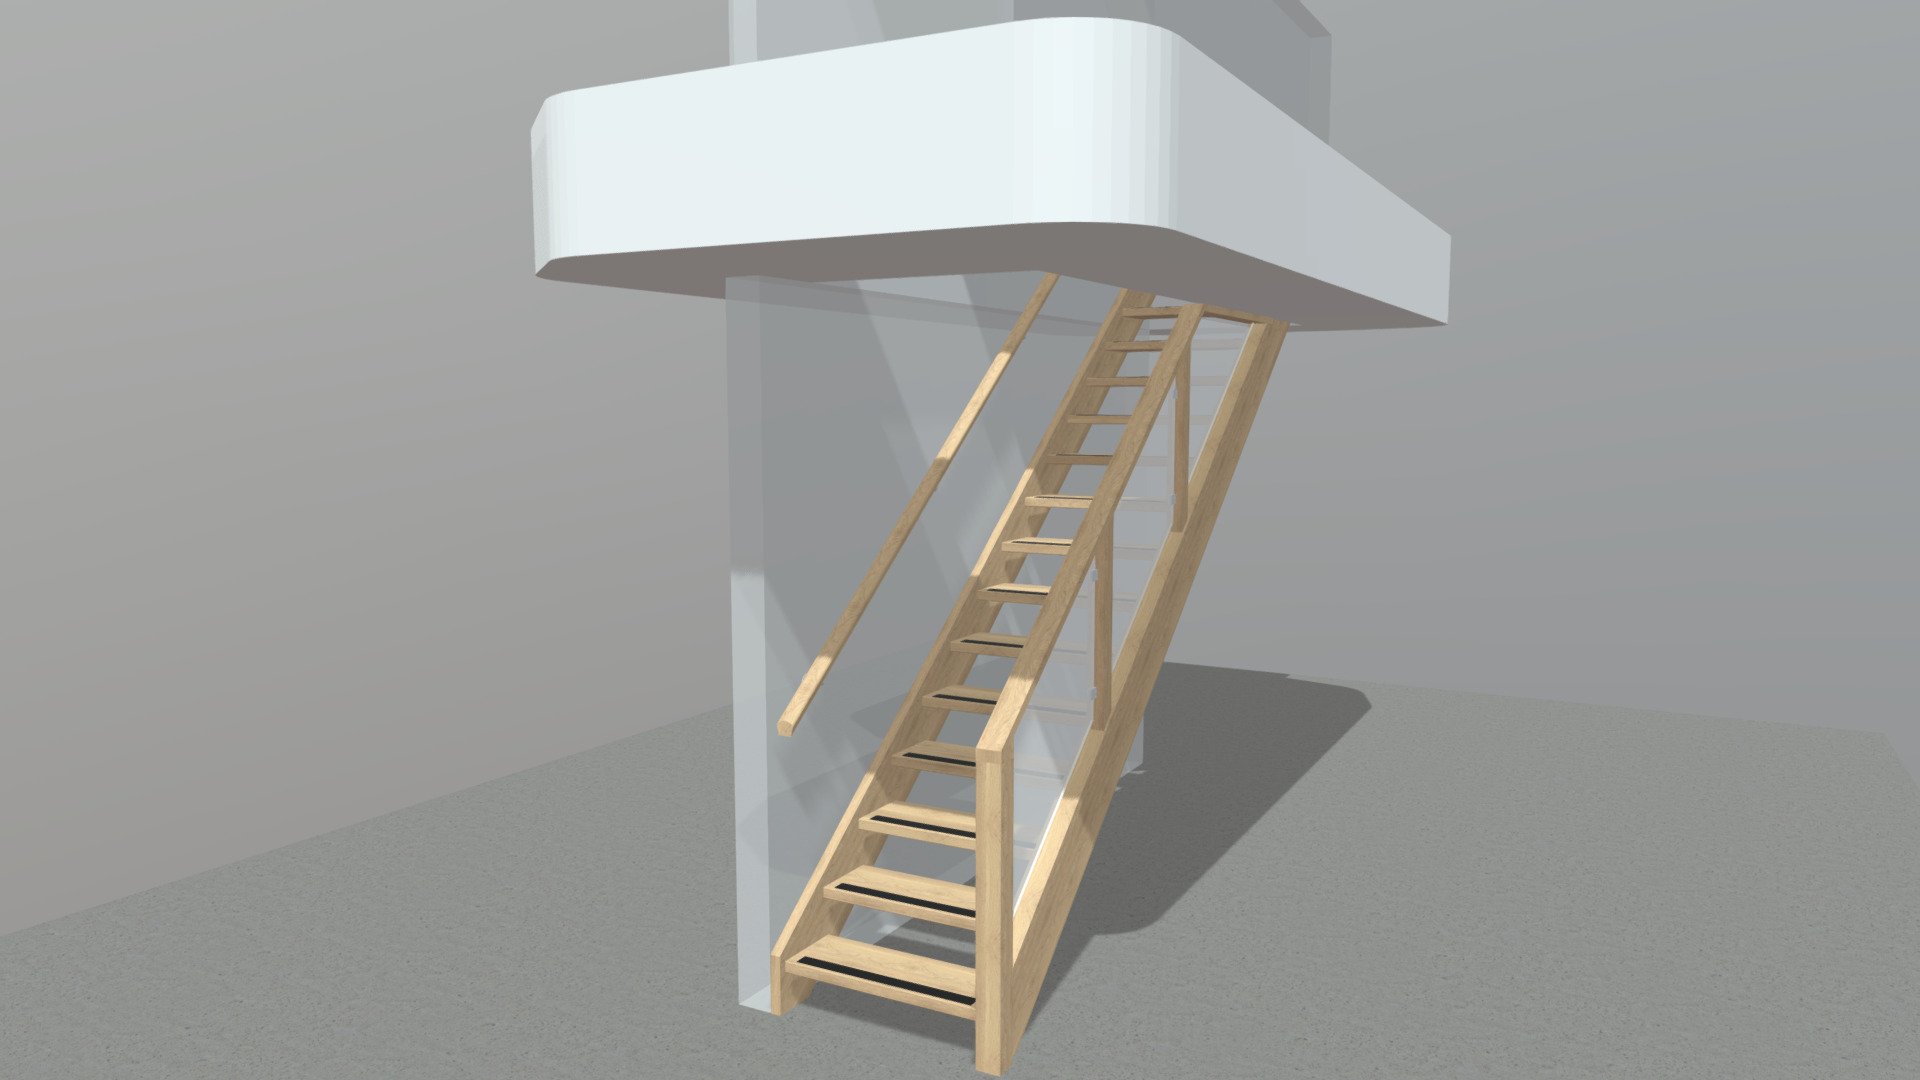 14205 - 3D model by staircom [ed499a4] - Sketchfab